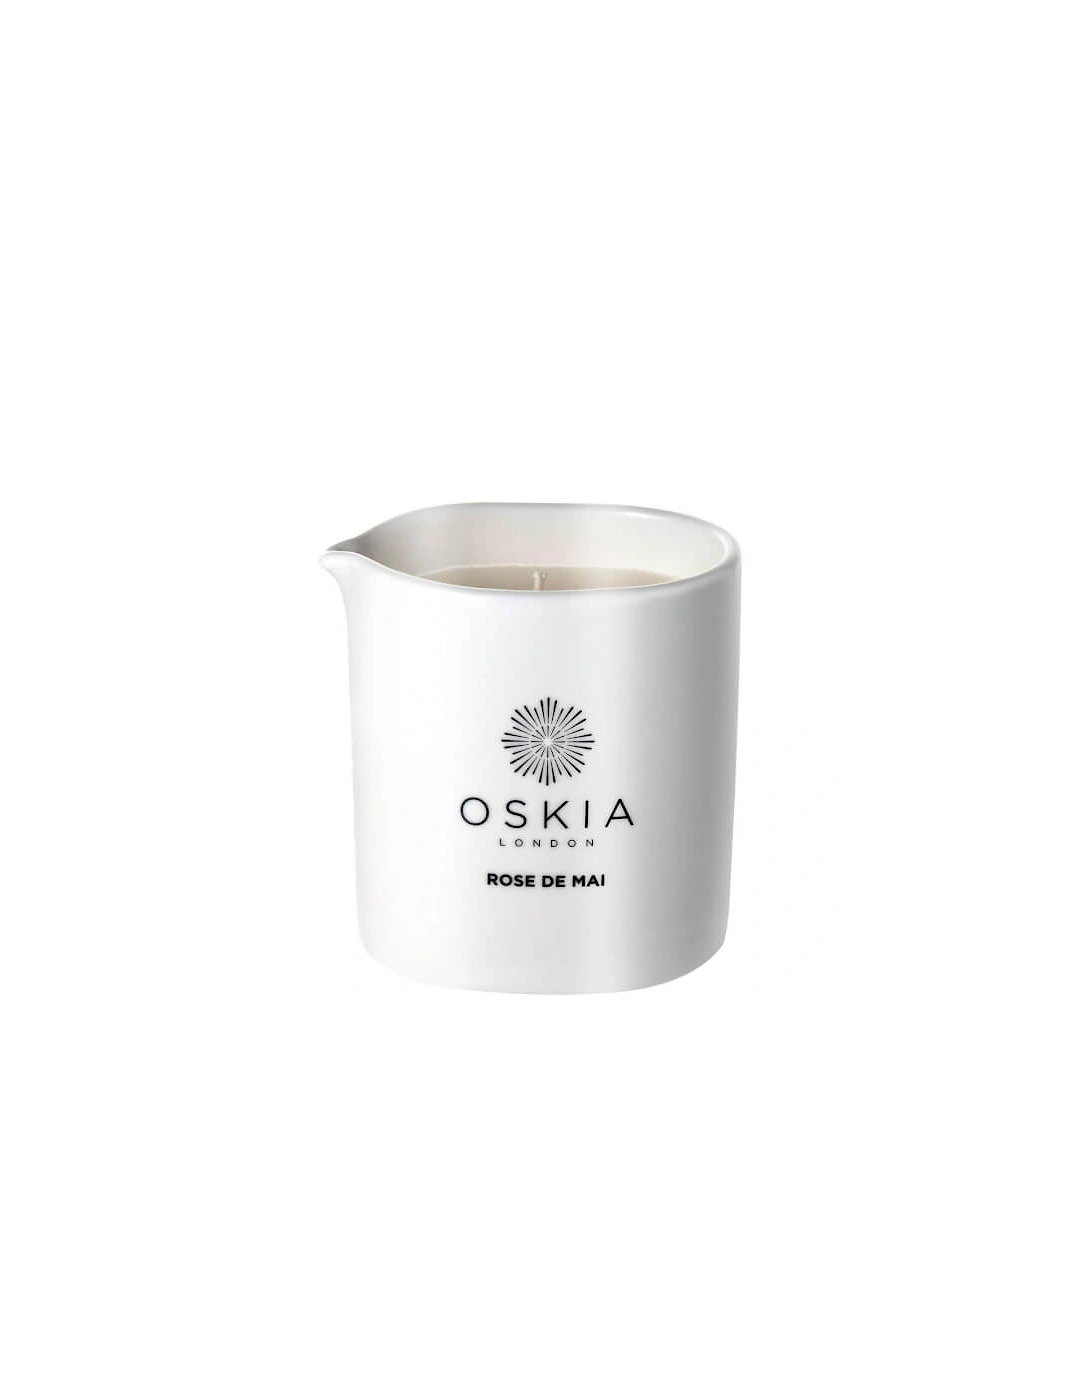 Skin Smoothing Massage Candle - OSKIA, 2 of 1